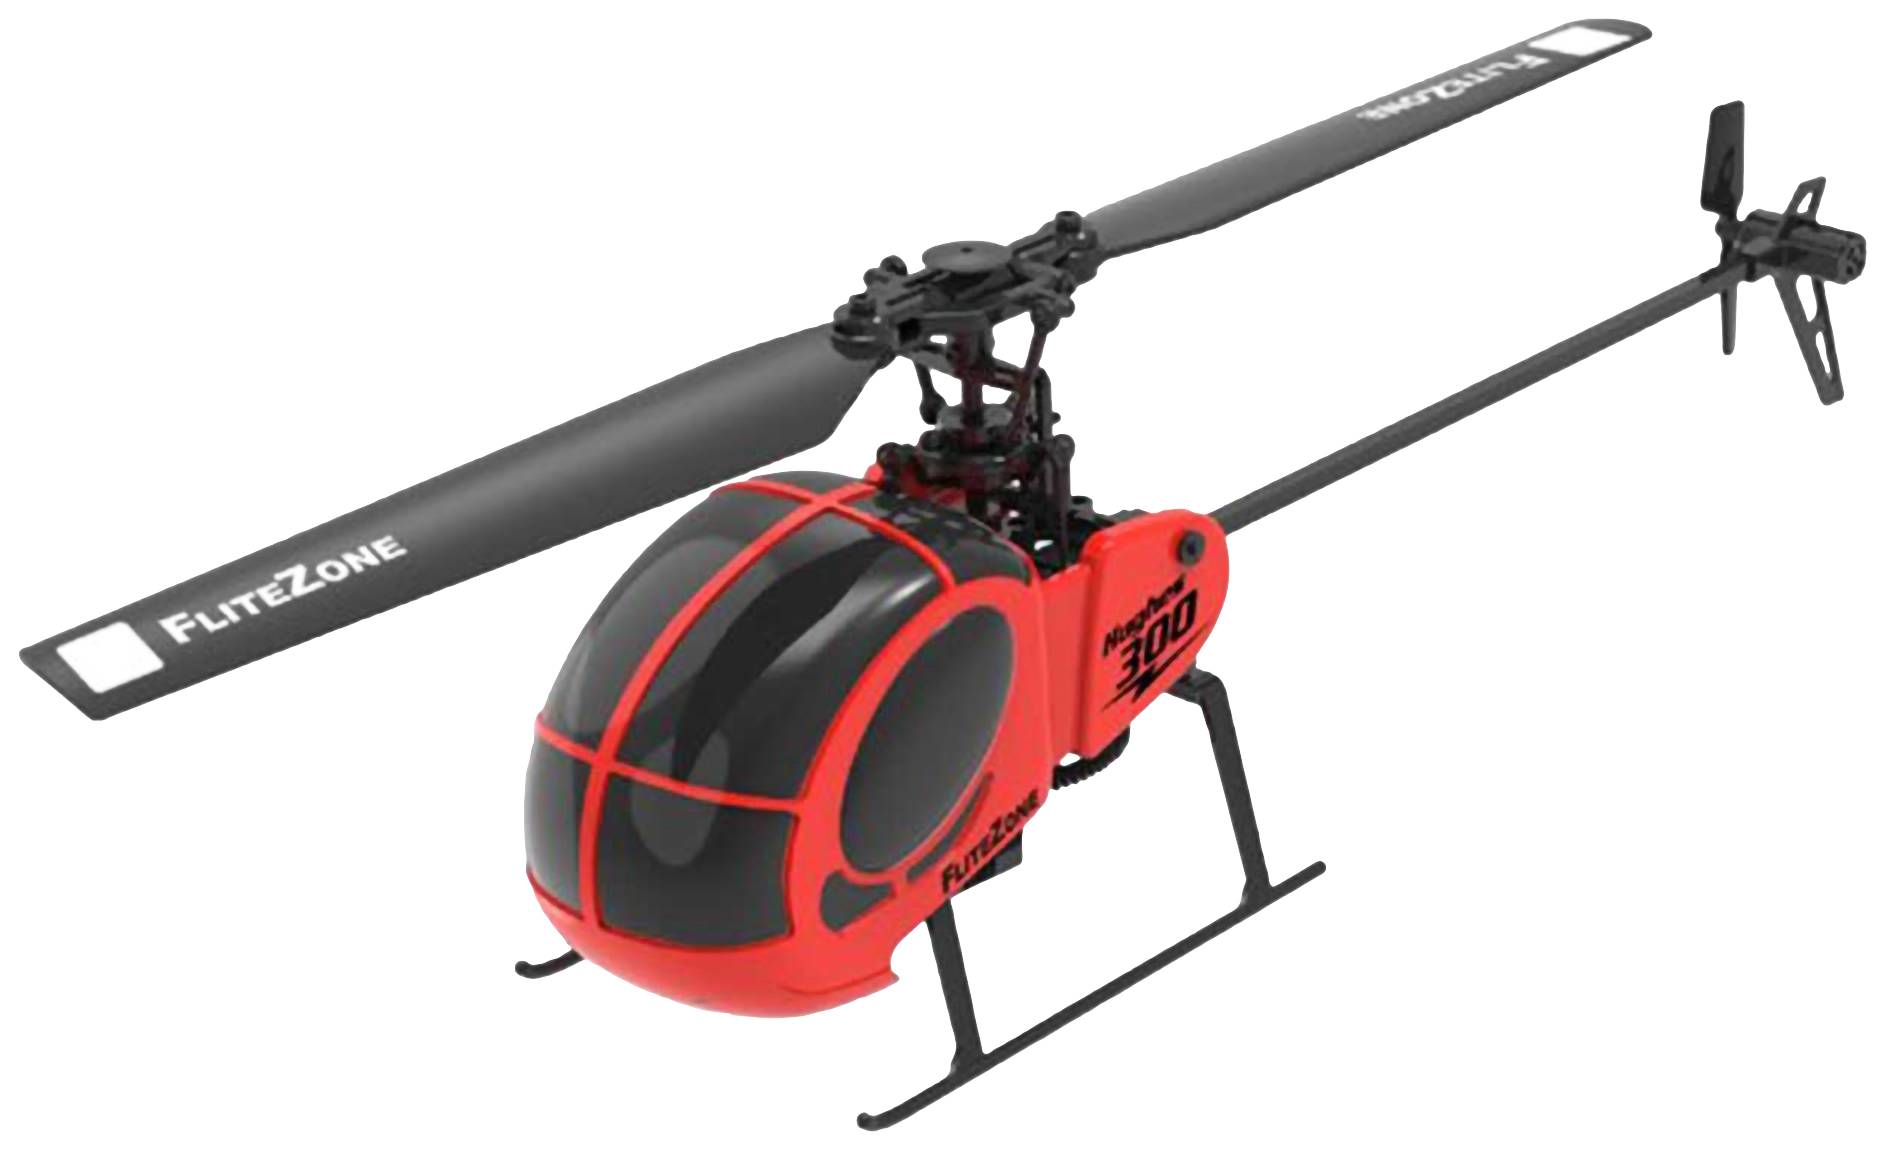 Pichler Hughes 300 RC helicopter | Conrad.com